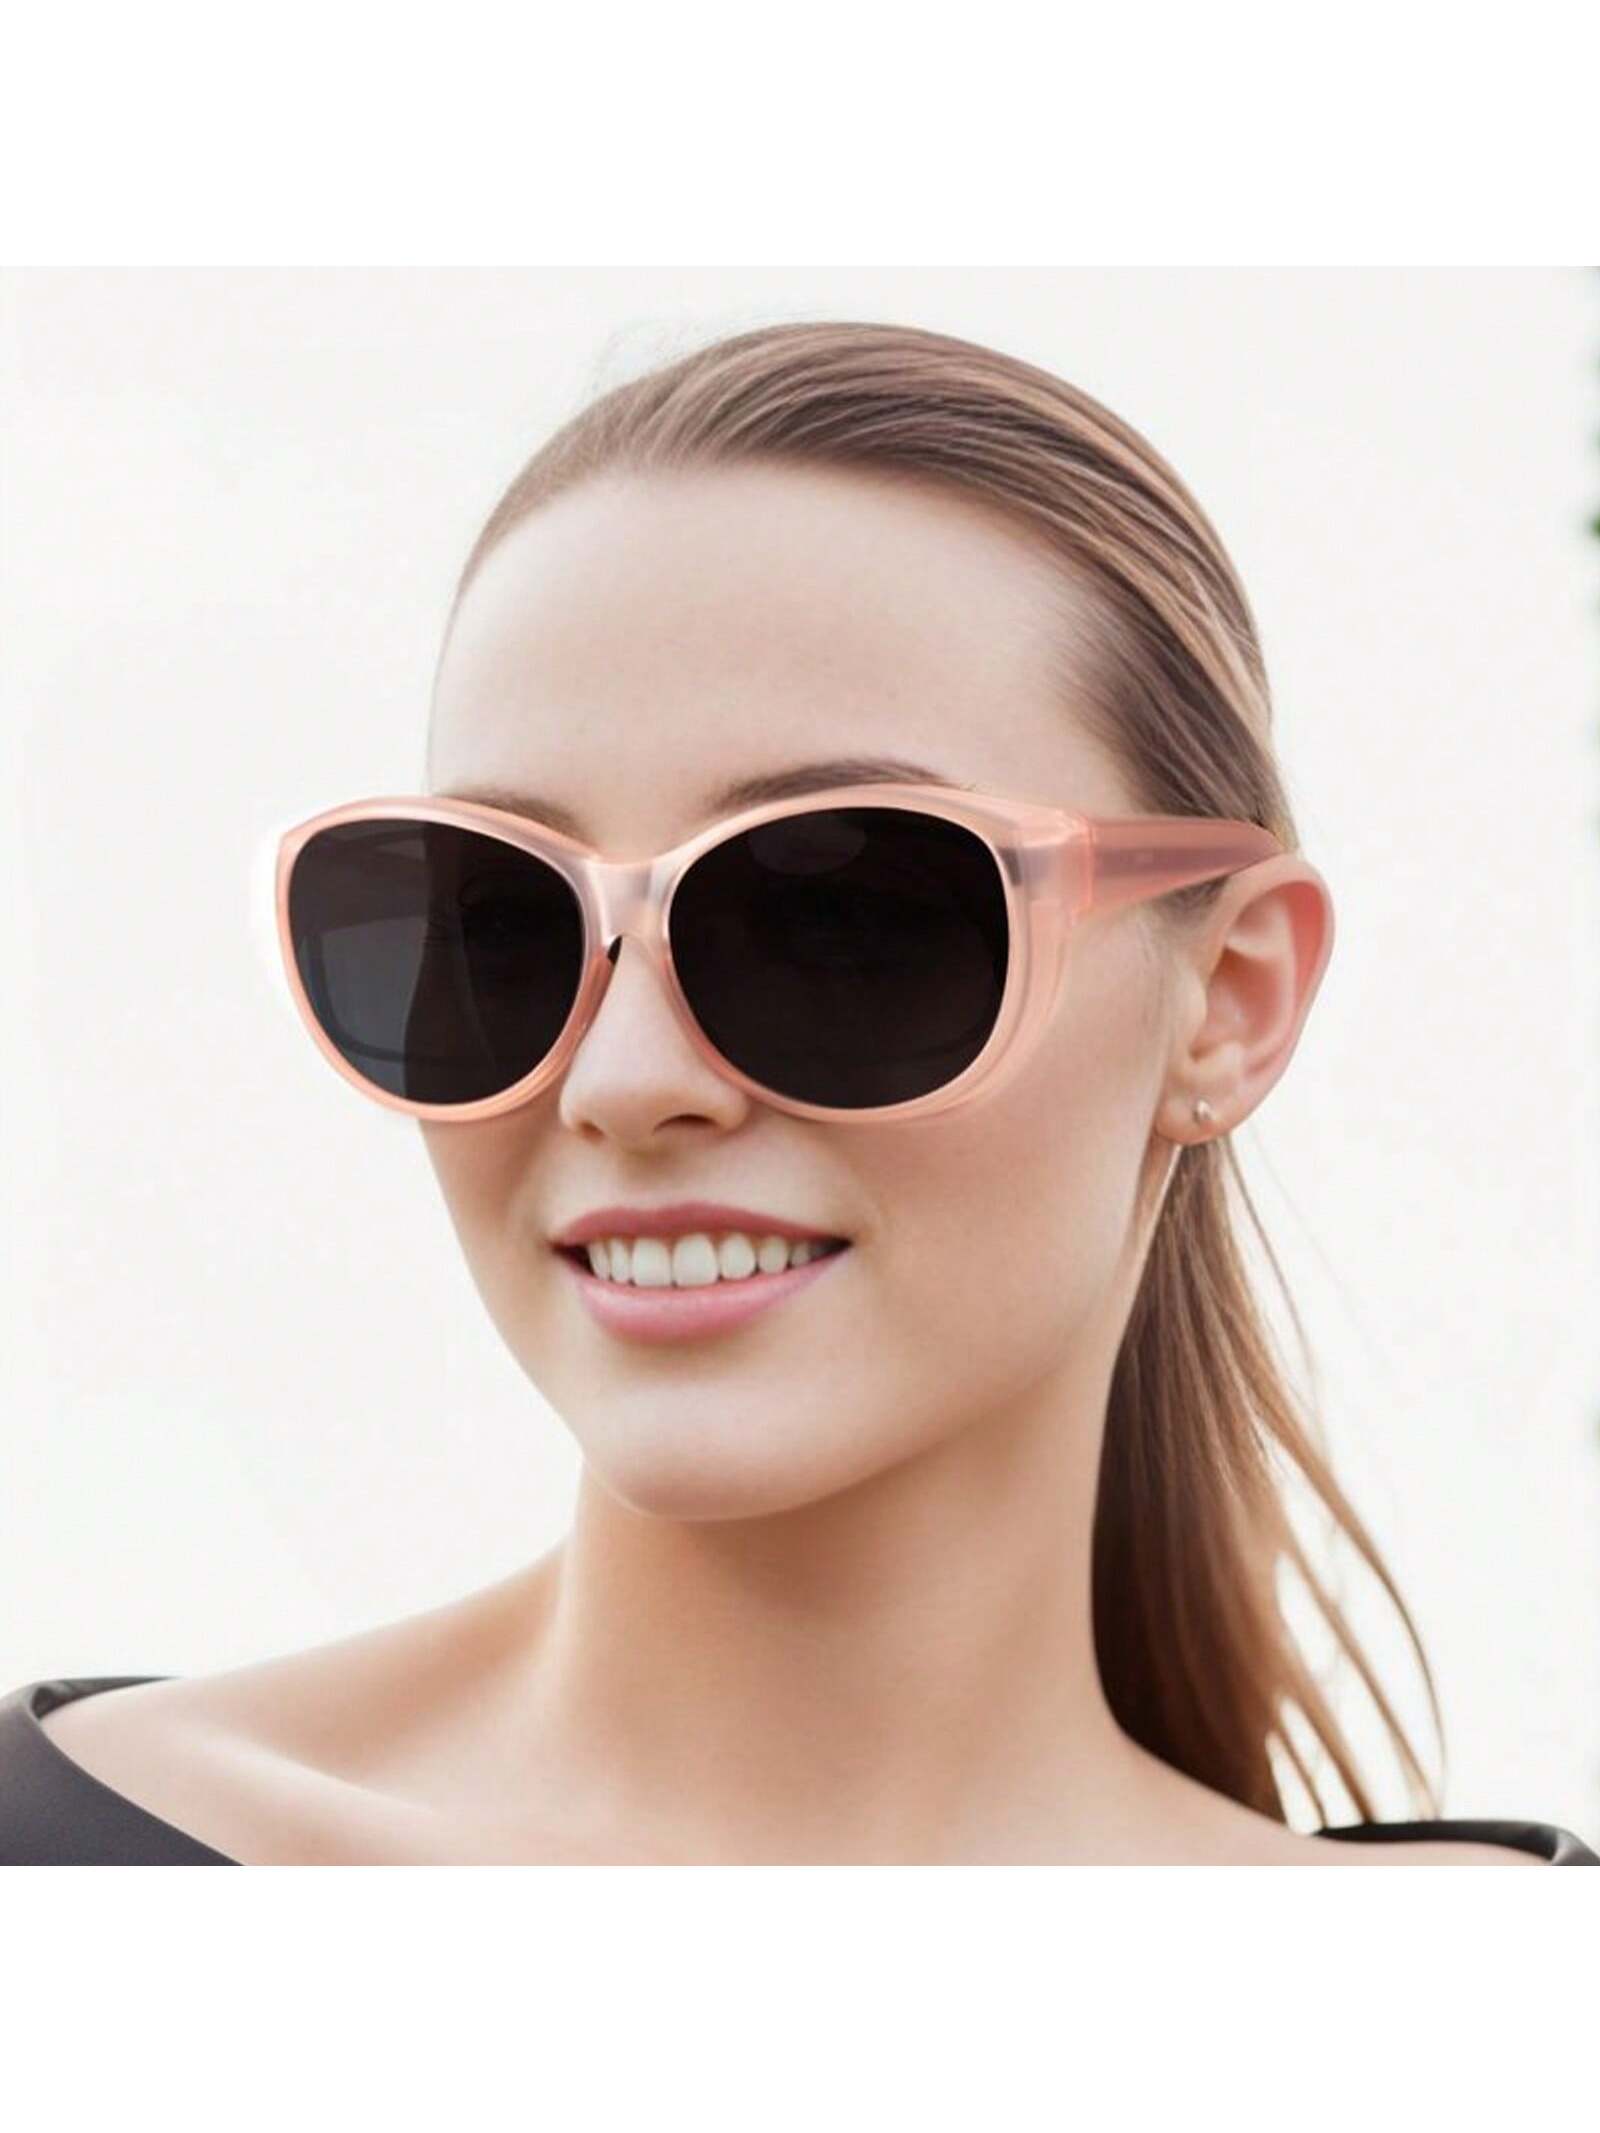 LVIOE 1 пара поляризованных солнцезащитных очков для женщин и мужчин